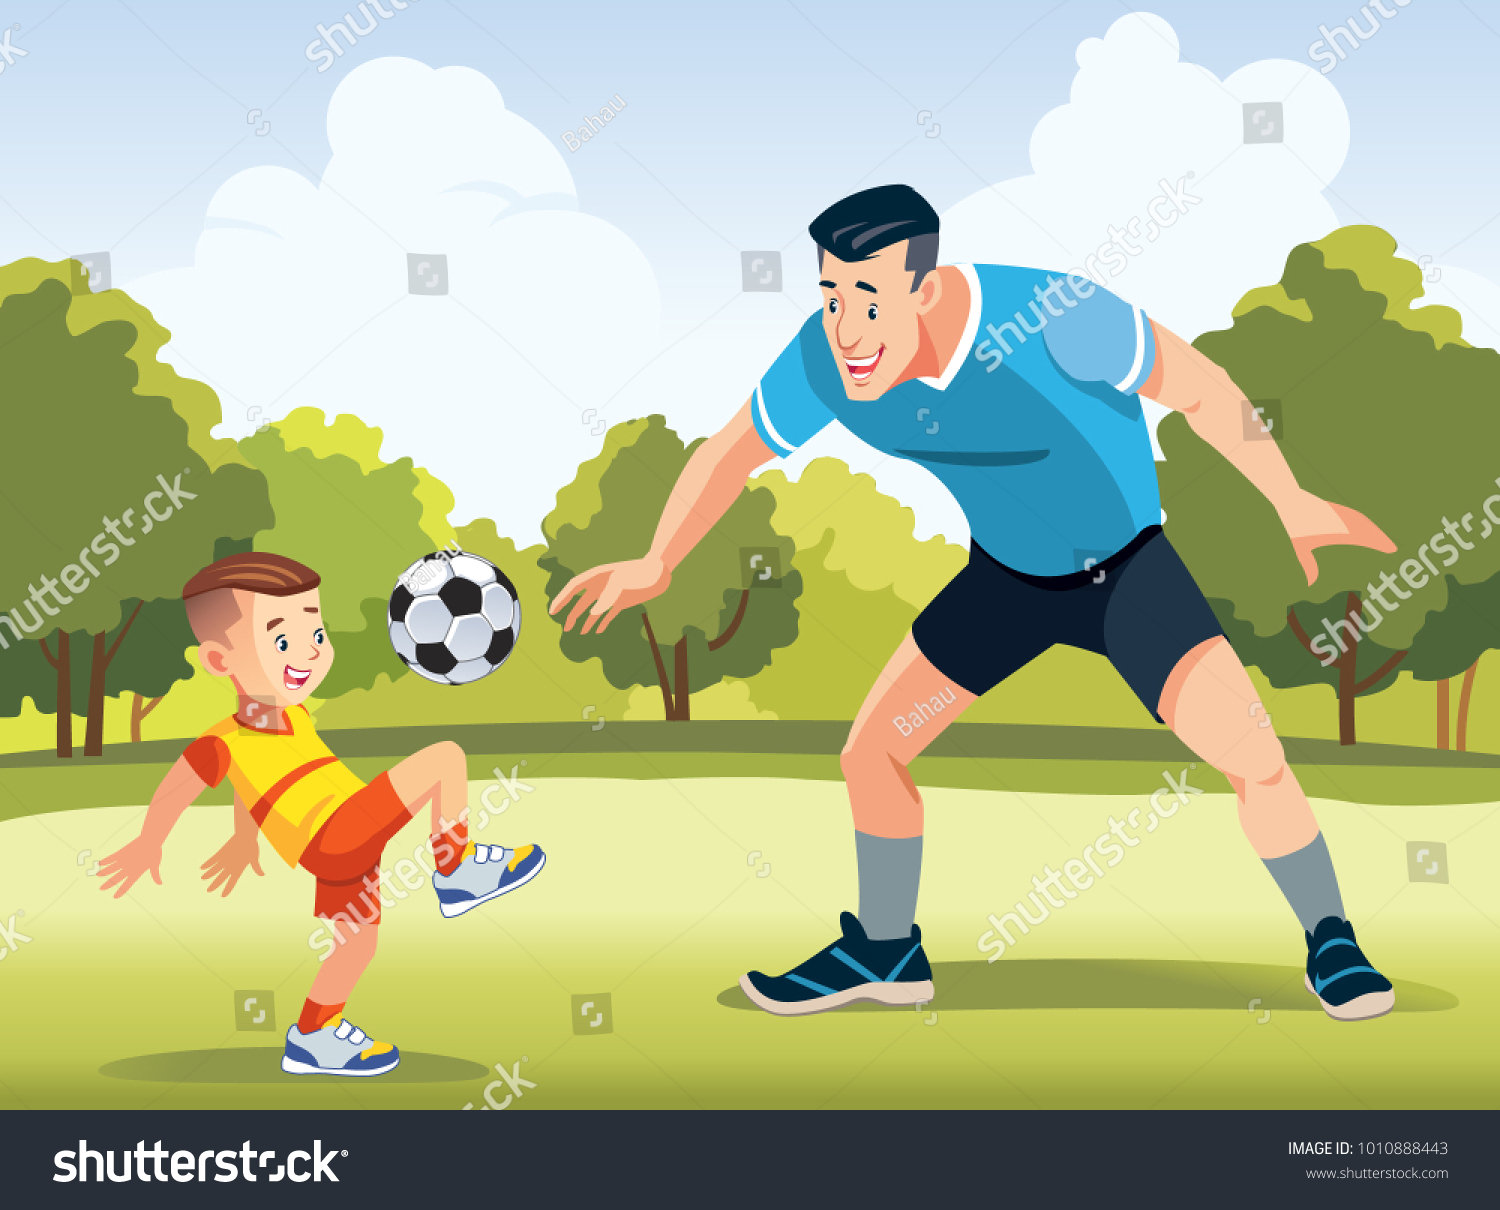 Папа играет в футбол. Футбол рисунок для детей. Играет в фуктболрисунок. Отец и сын играют в футбол рисунок. Игра в футбол с папой картинки.